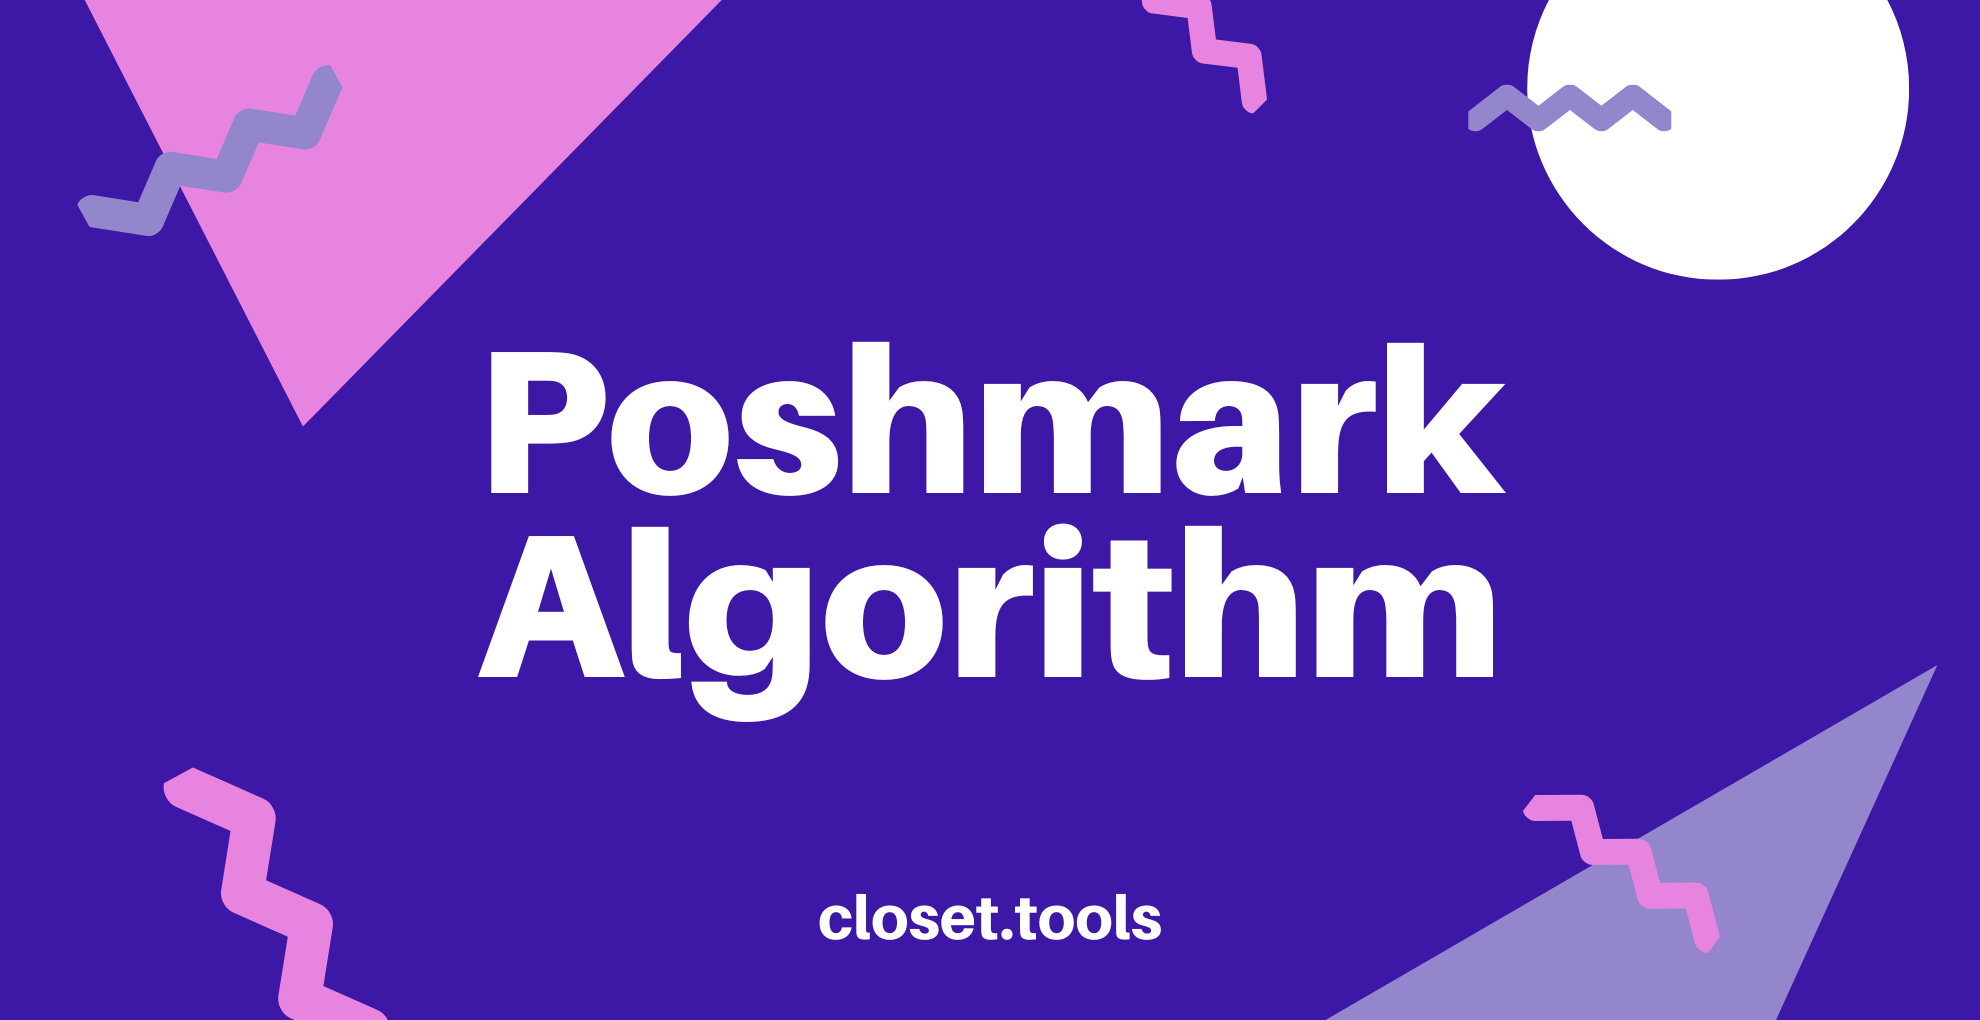 Poshmark Algorithms